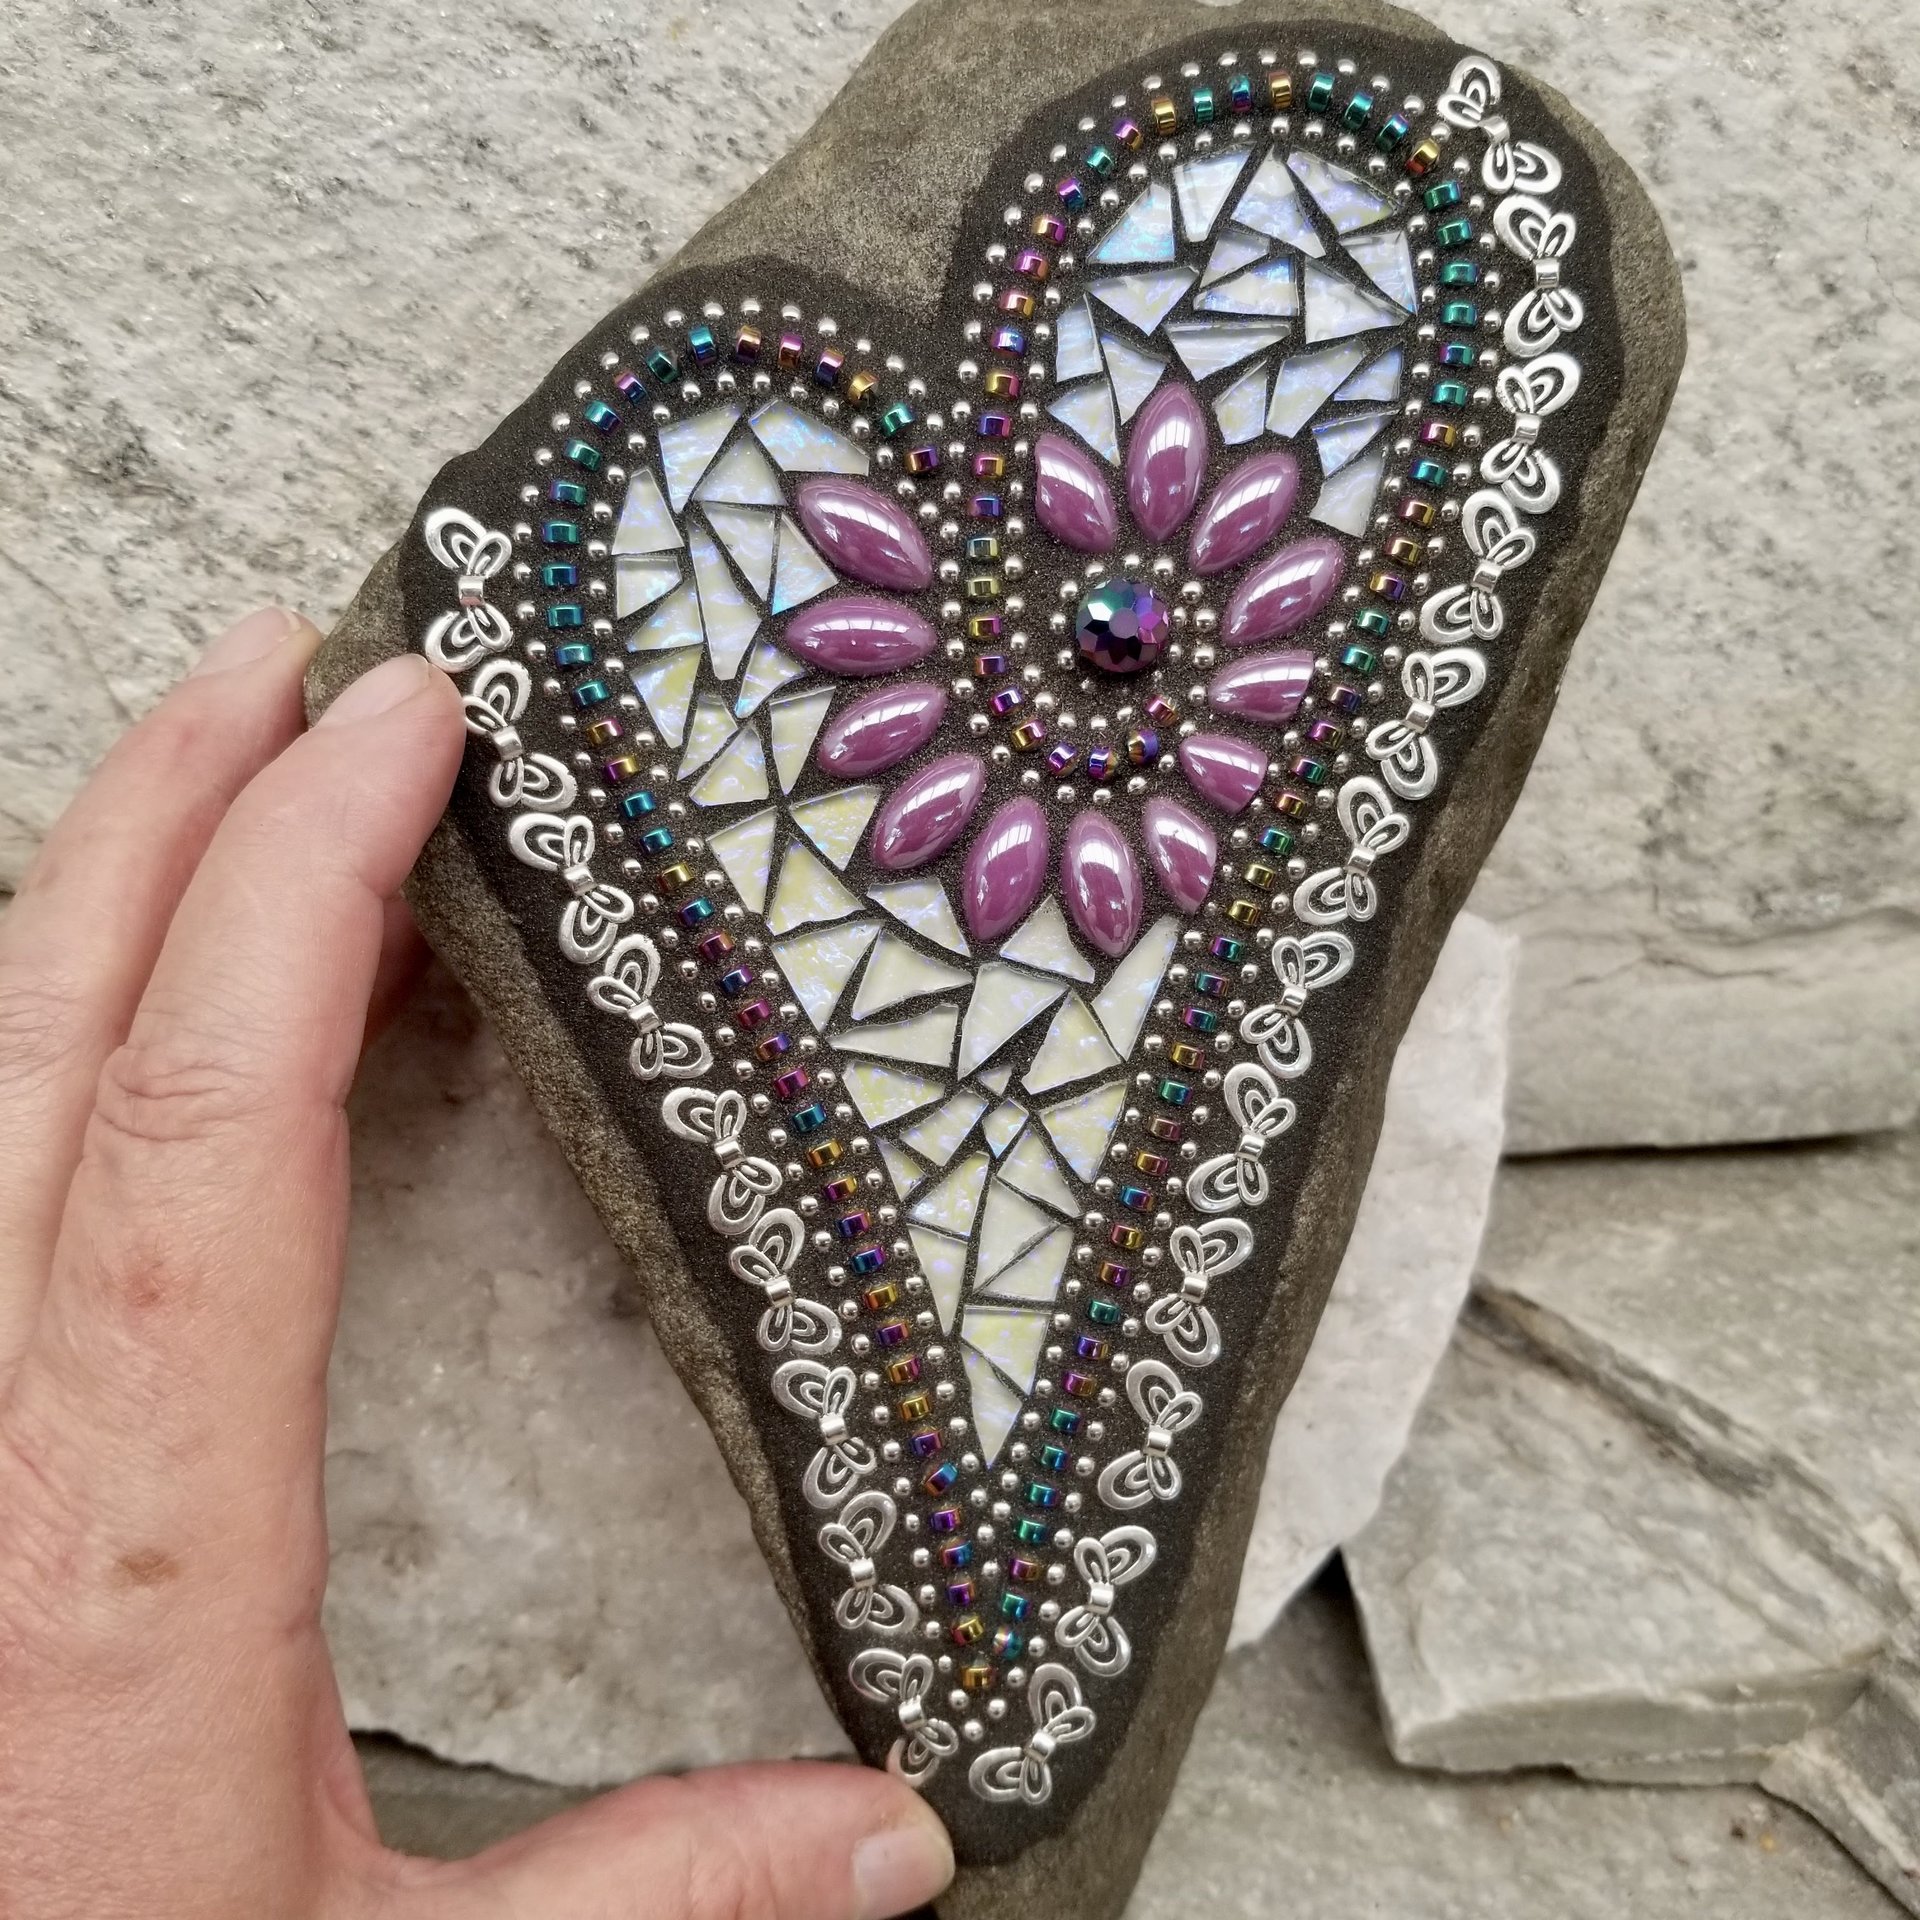 Iridescent Lavender Heart with Butterflies, Garden Stone, Mosaic, Garden Decor